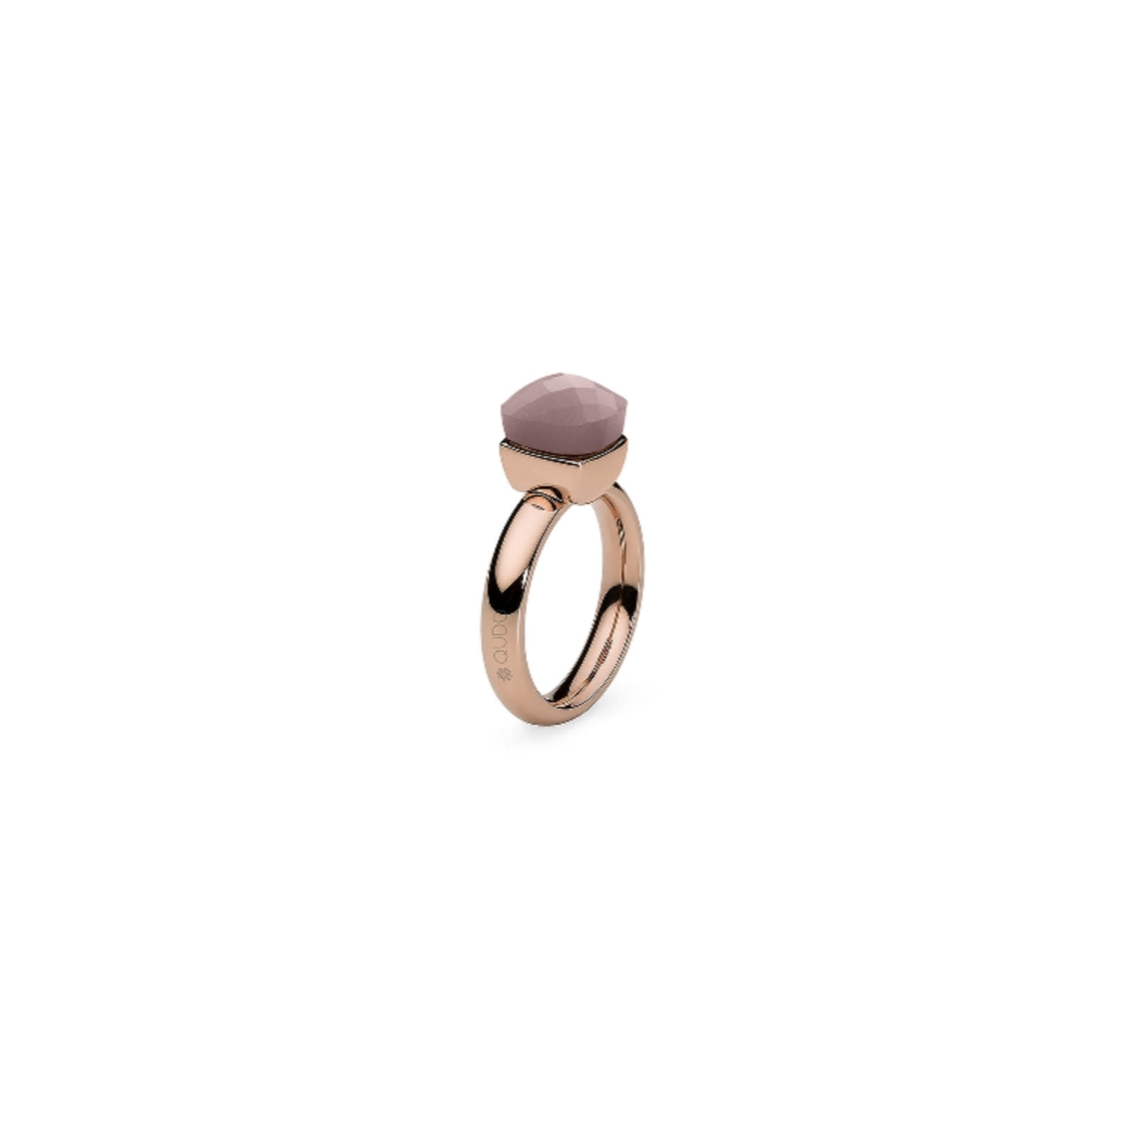 Dies ist ein Ring der Marke Qudo, Modell Firenze. Er hat eine Farbkombination aus Darkrosé opal und Roségold. Der Ring strahlt Eleganz und Klasse aus und ist ideal für besondere Anlässe oder als alltägliches Accessoire